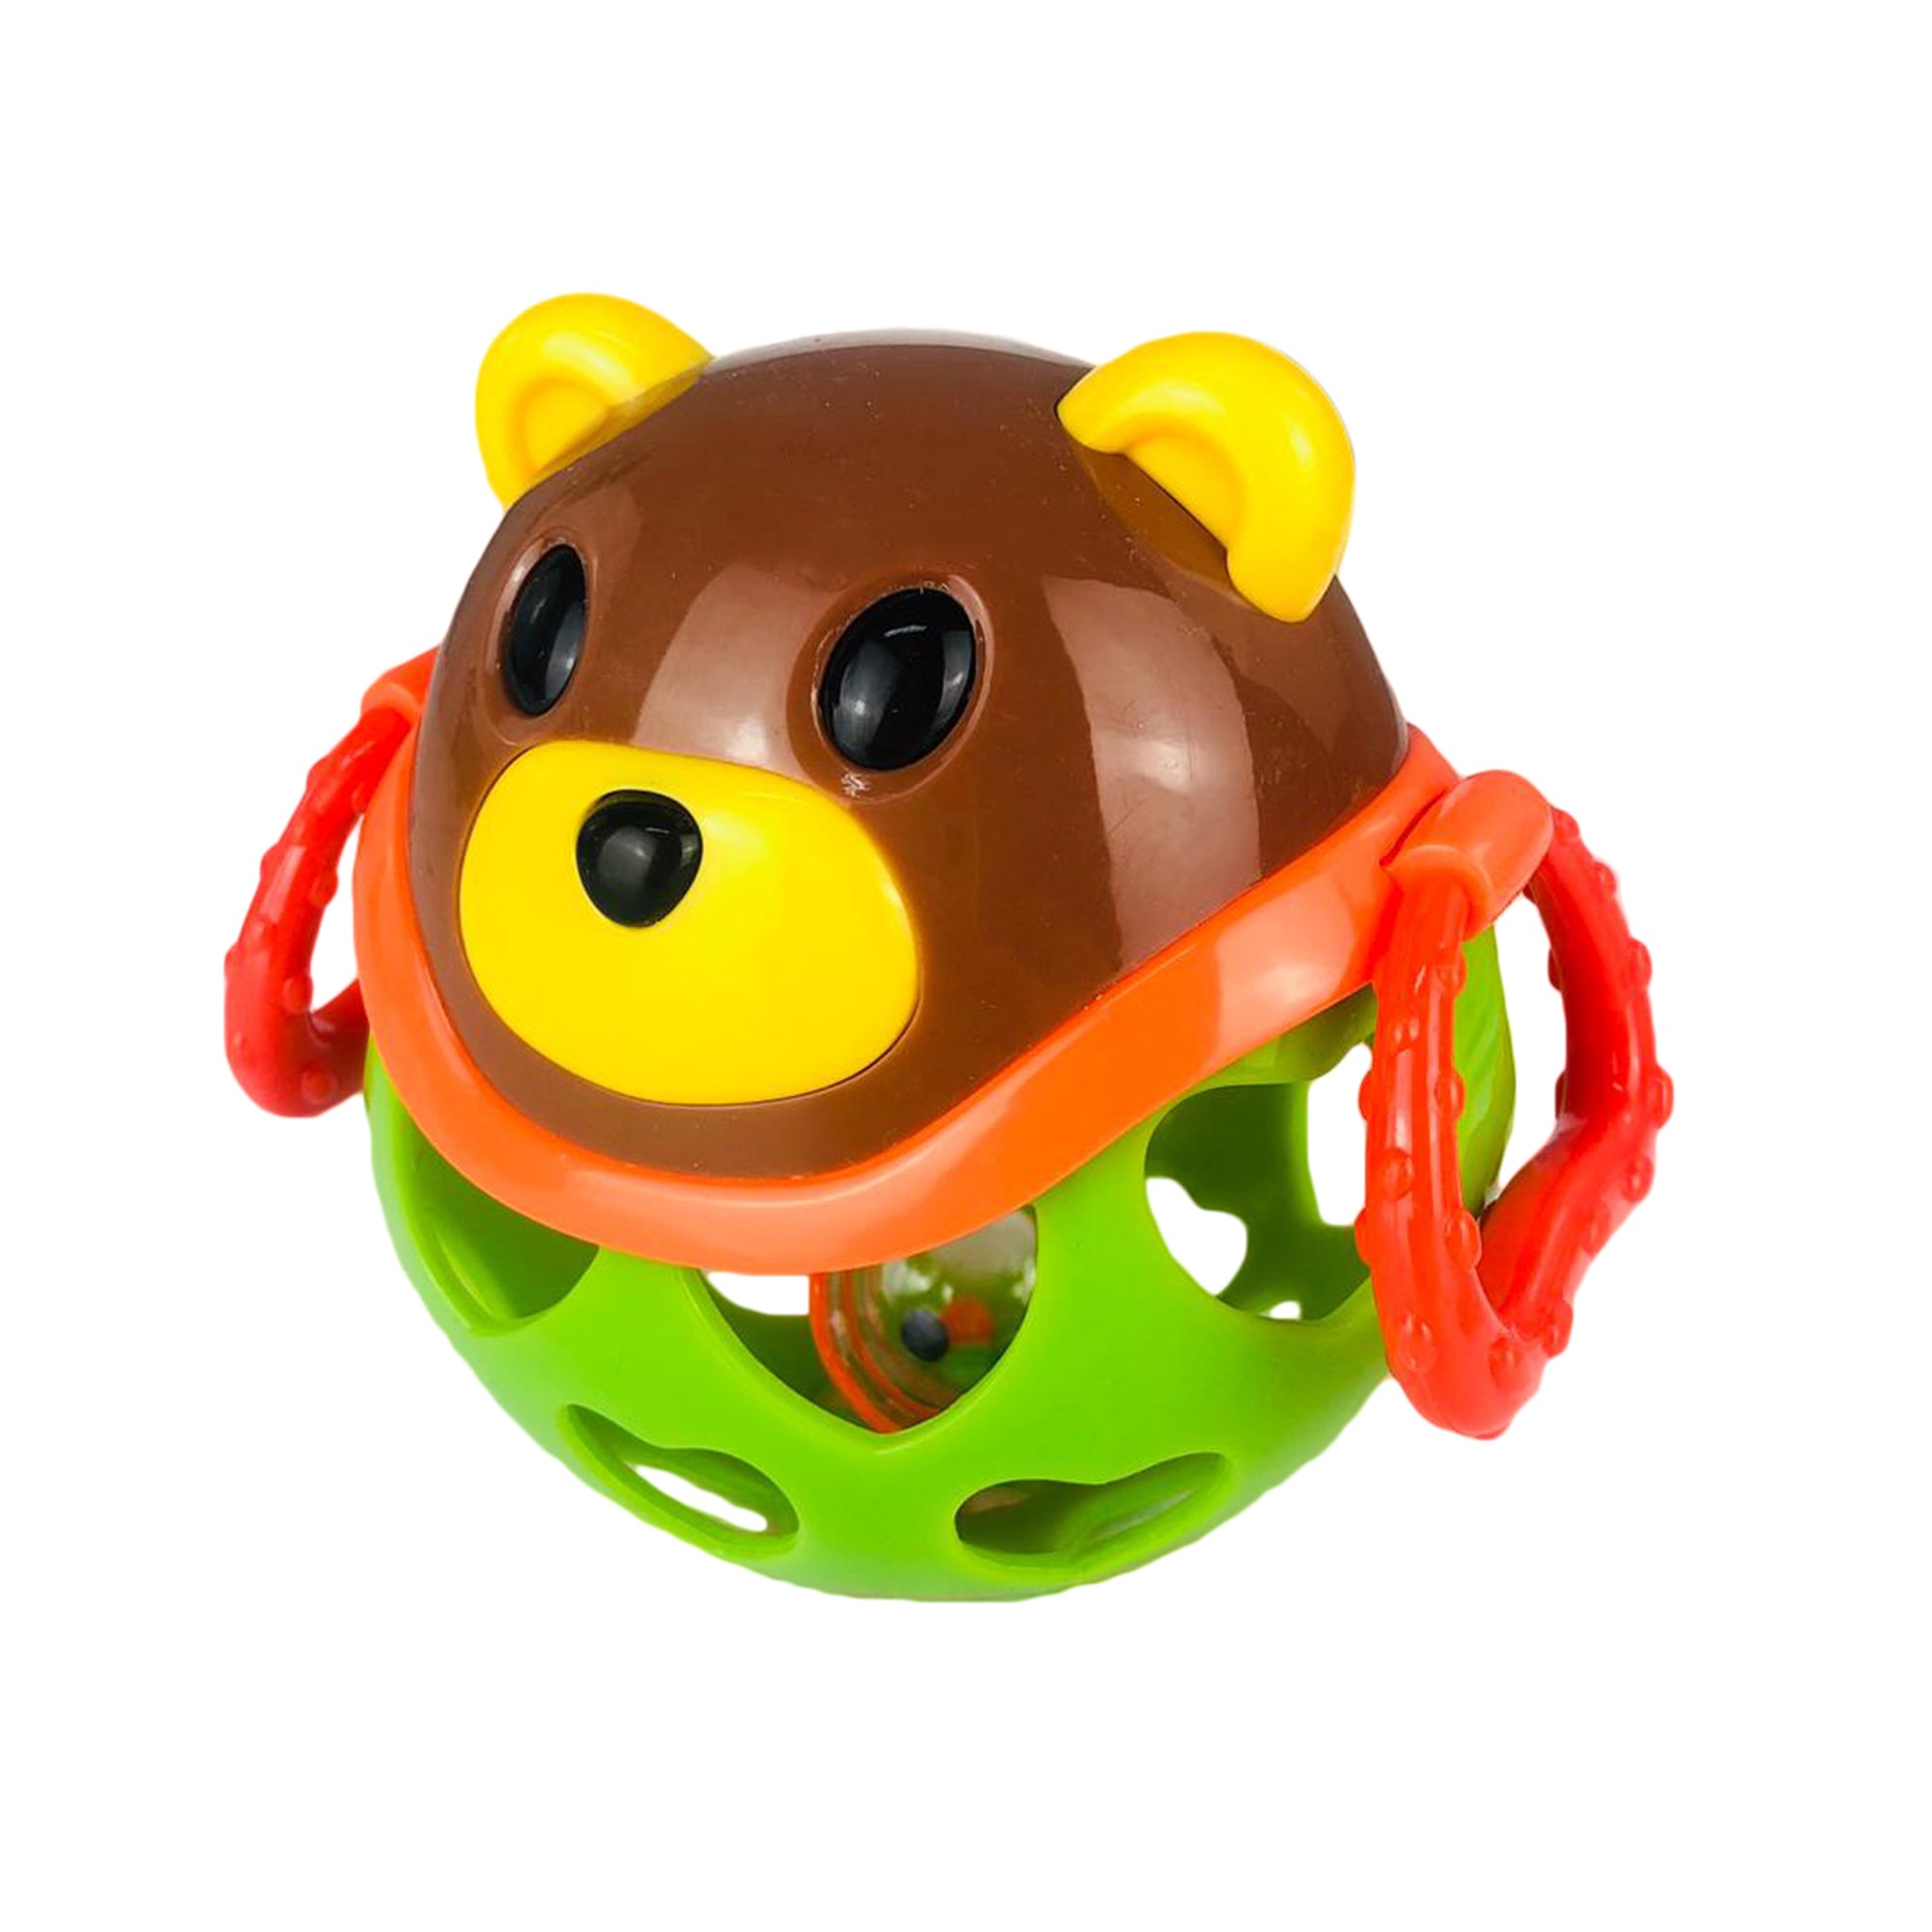 Giocattolo creativo per bambini neonato BamBam orsetto a sfera con sonaglio 2888